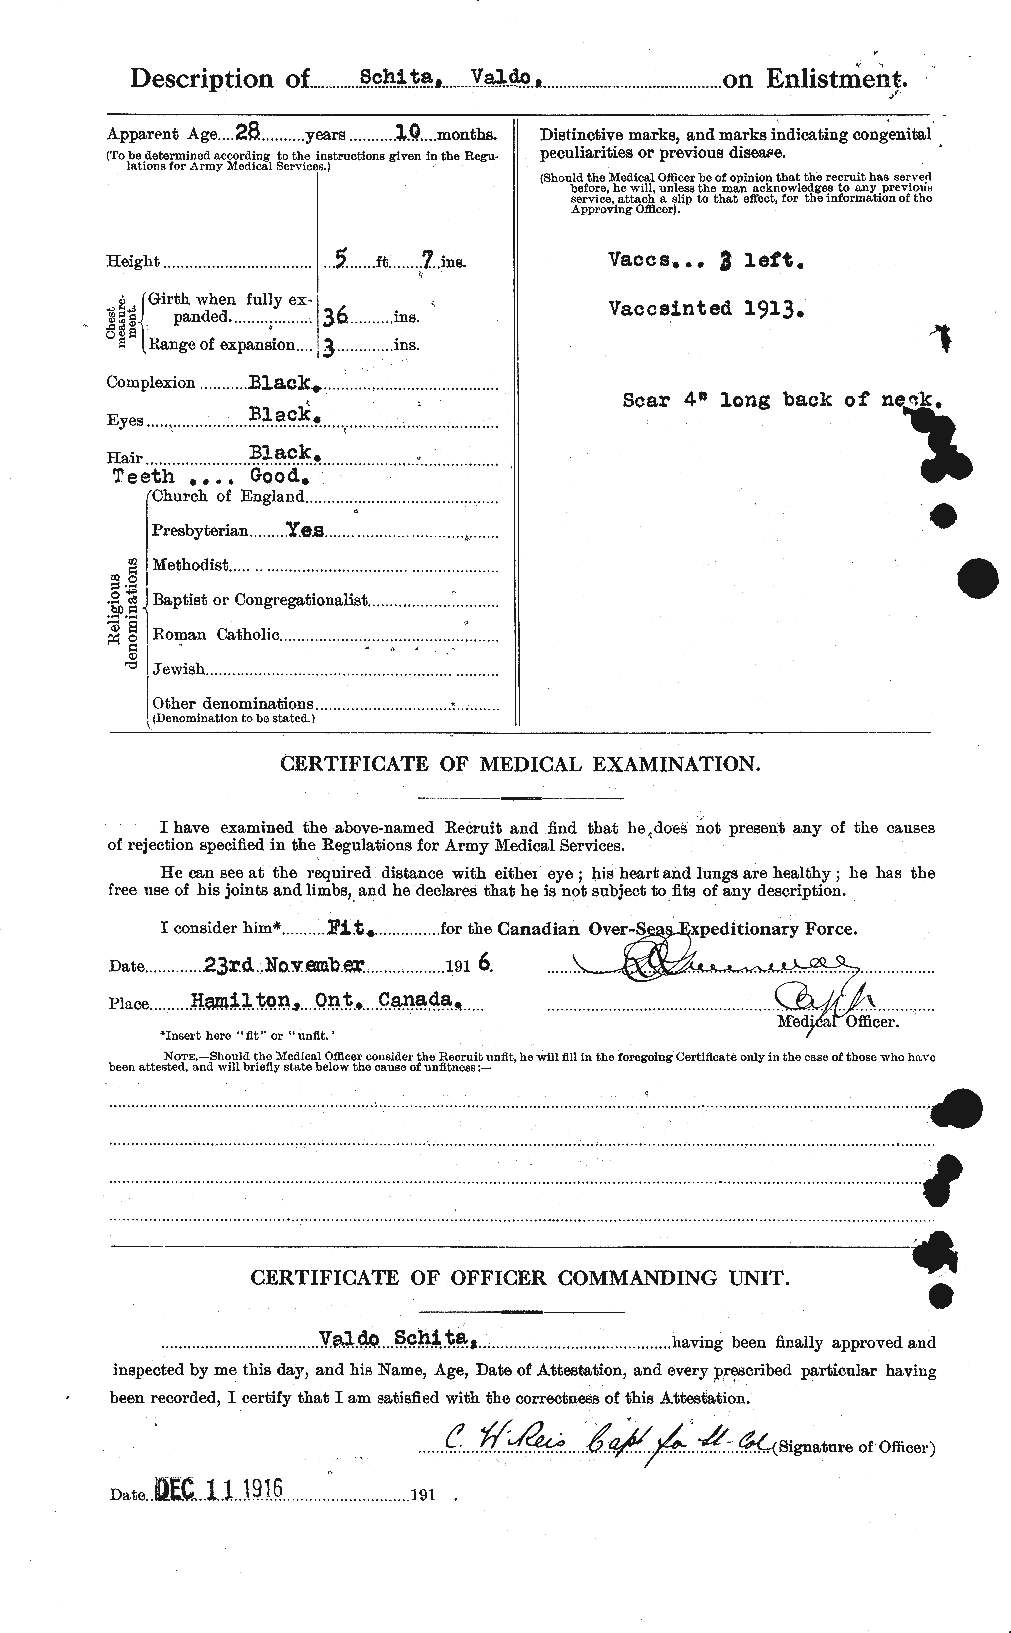 Dossiers du Personnel de la Première Guerre mondiale - CEC 083431b